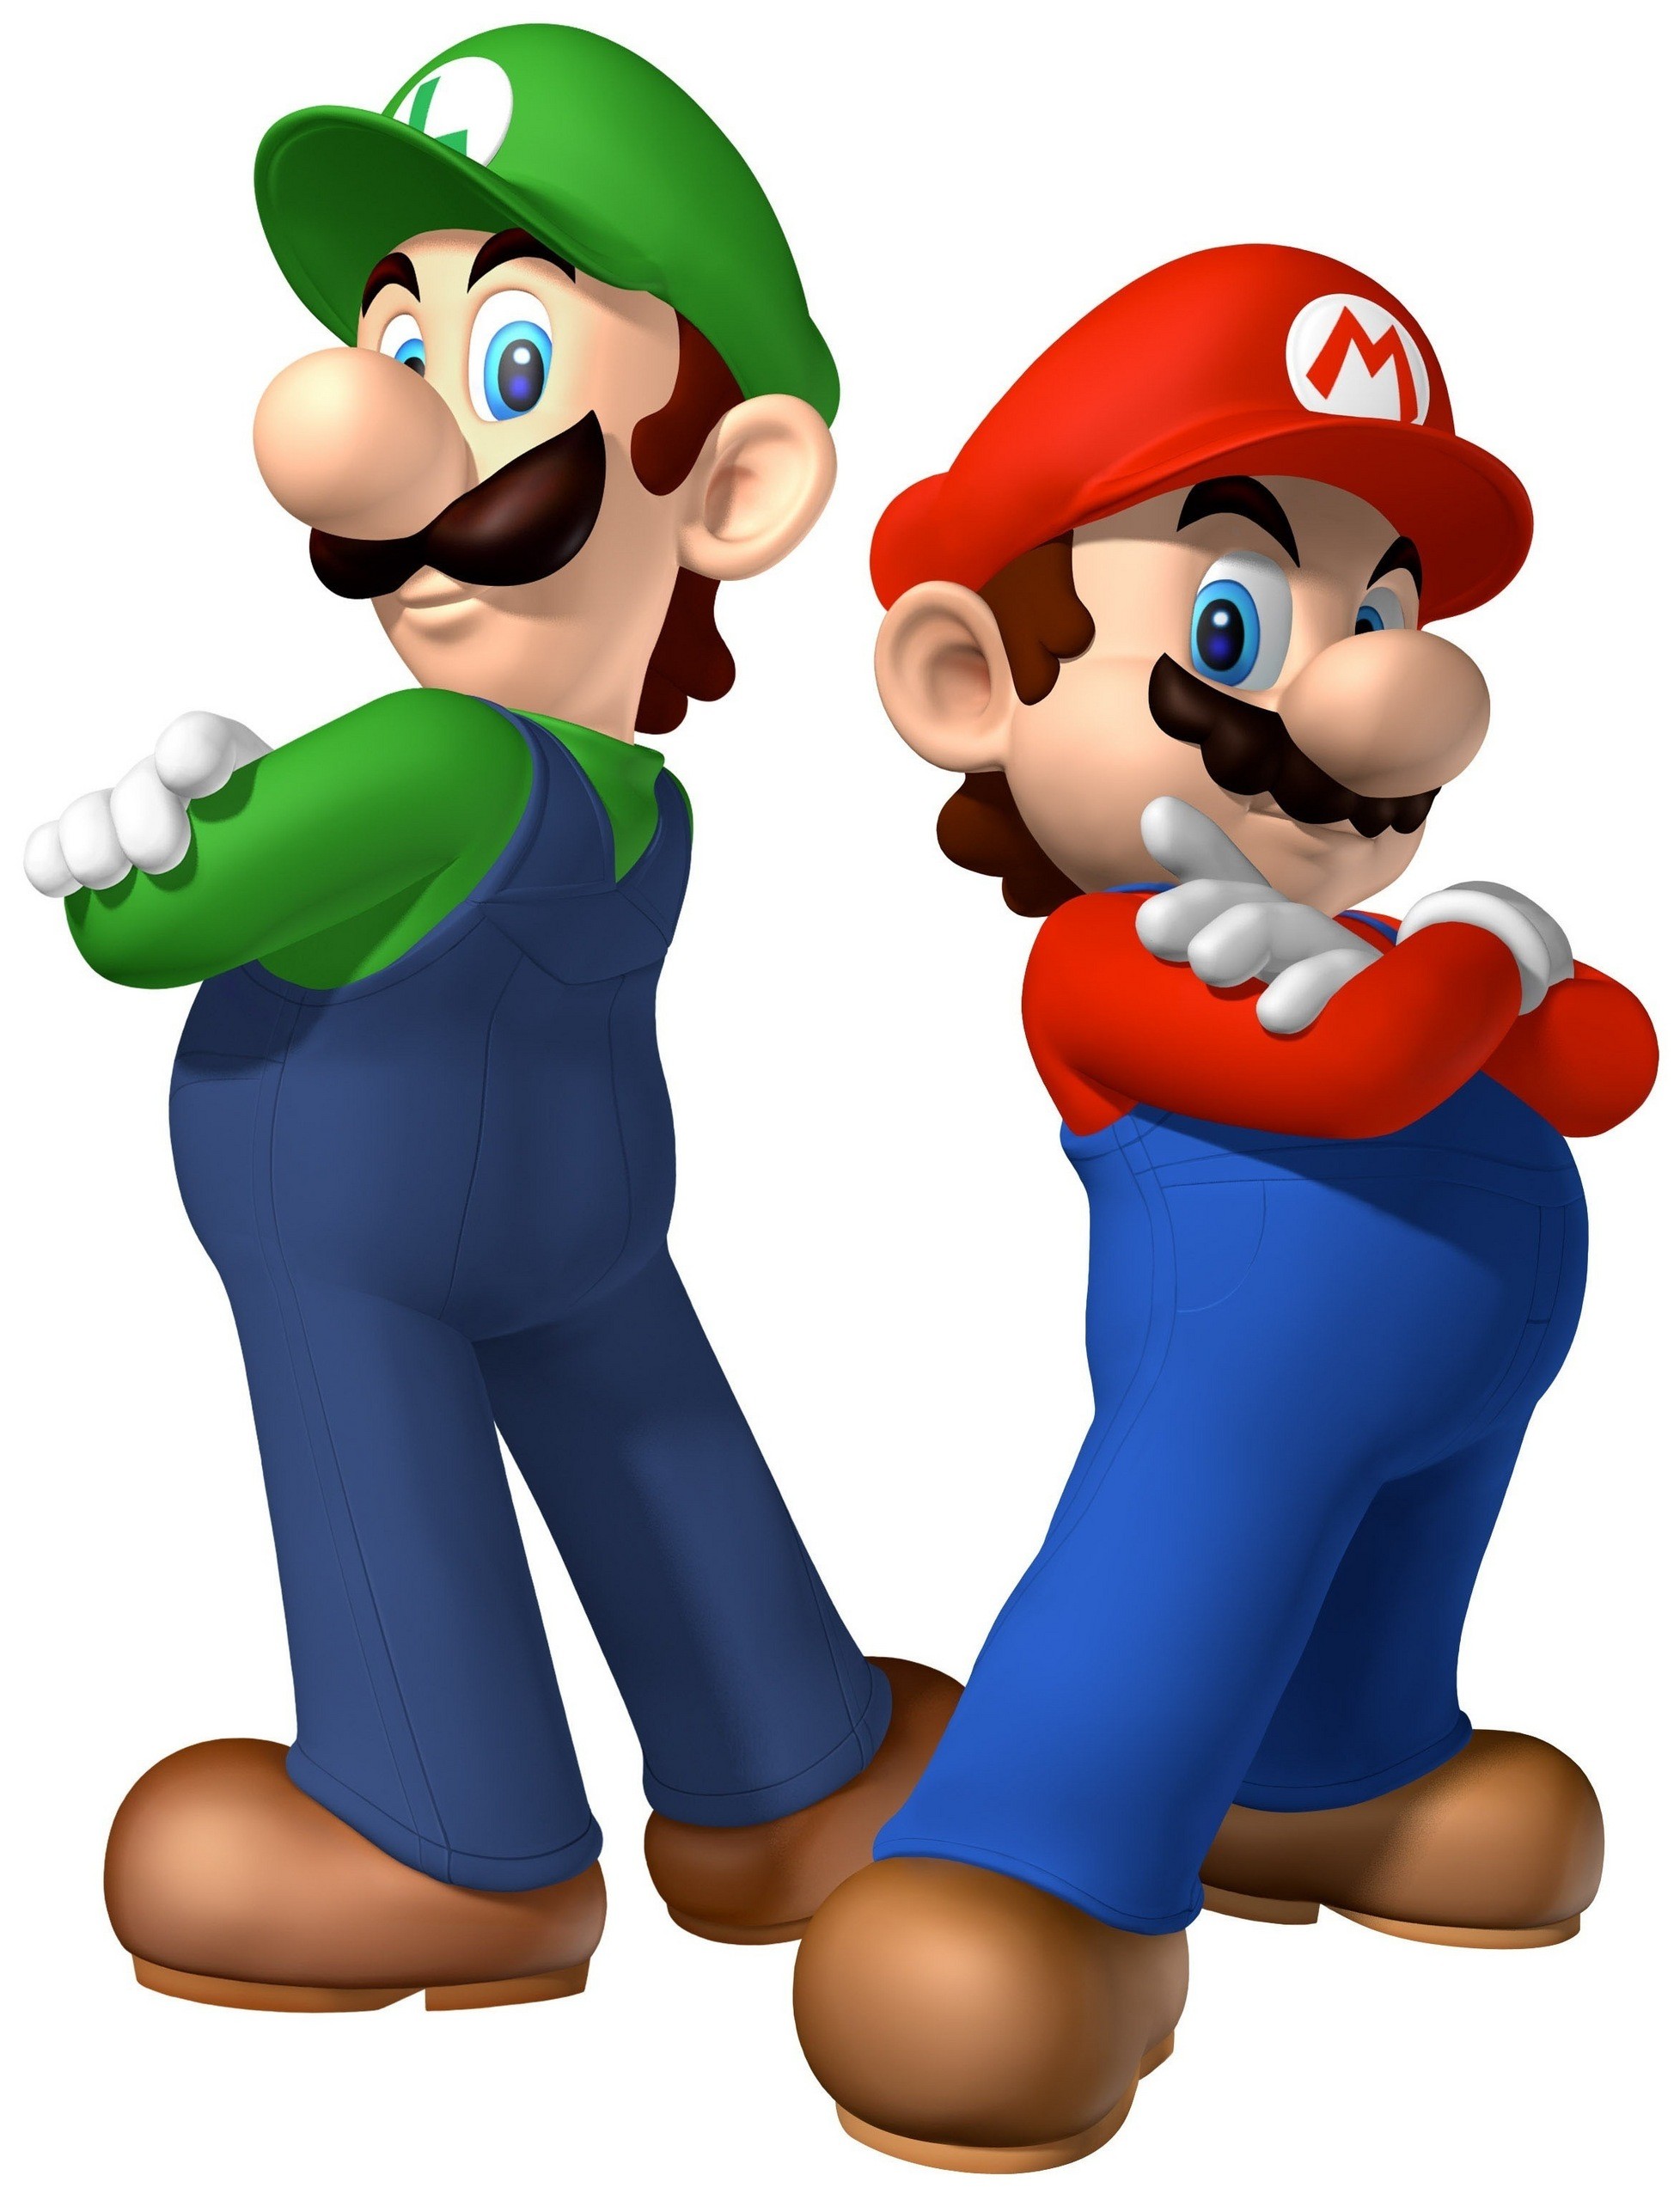 Mario And Luigi Images The Mario Bros - Older Mario Or Luigi - HD Wallpaper 